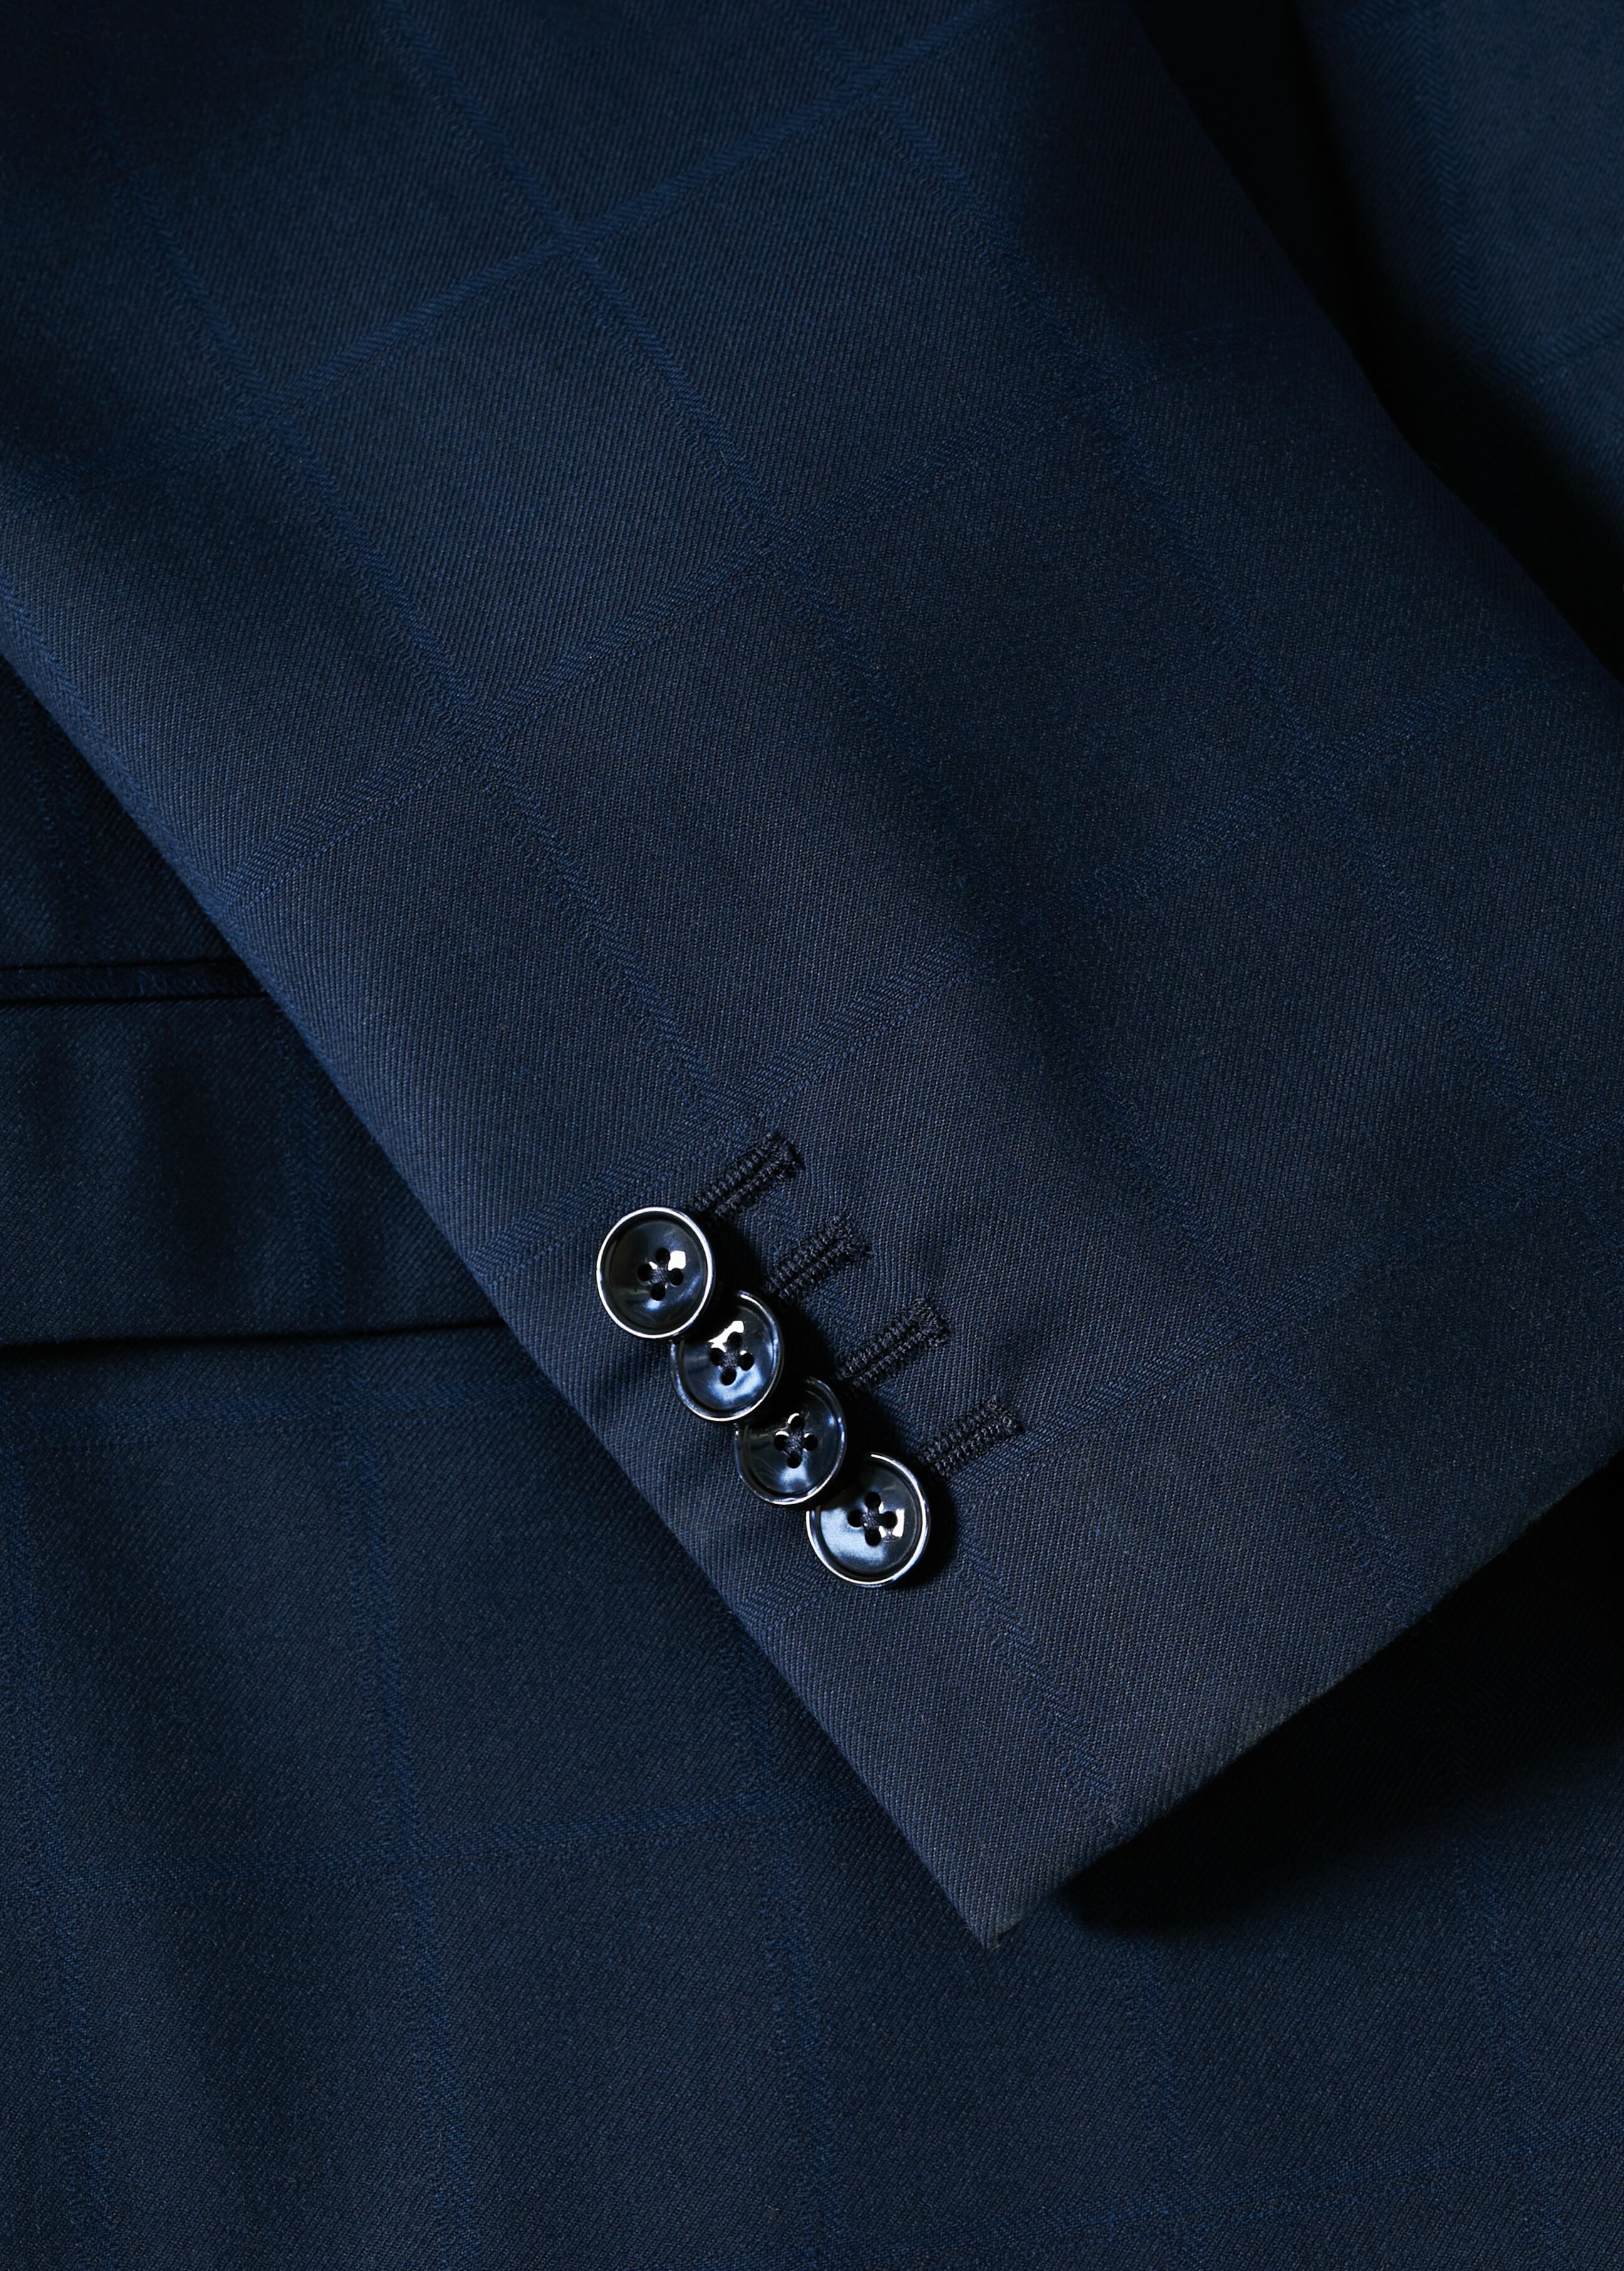 Super slim-fit suit jacket - Details of the article 7